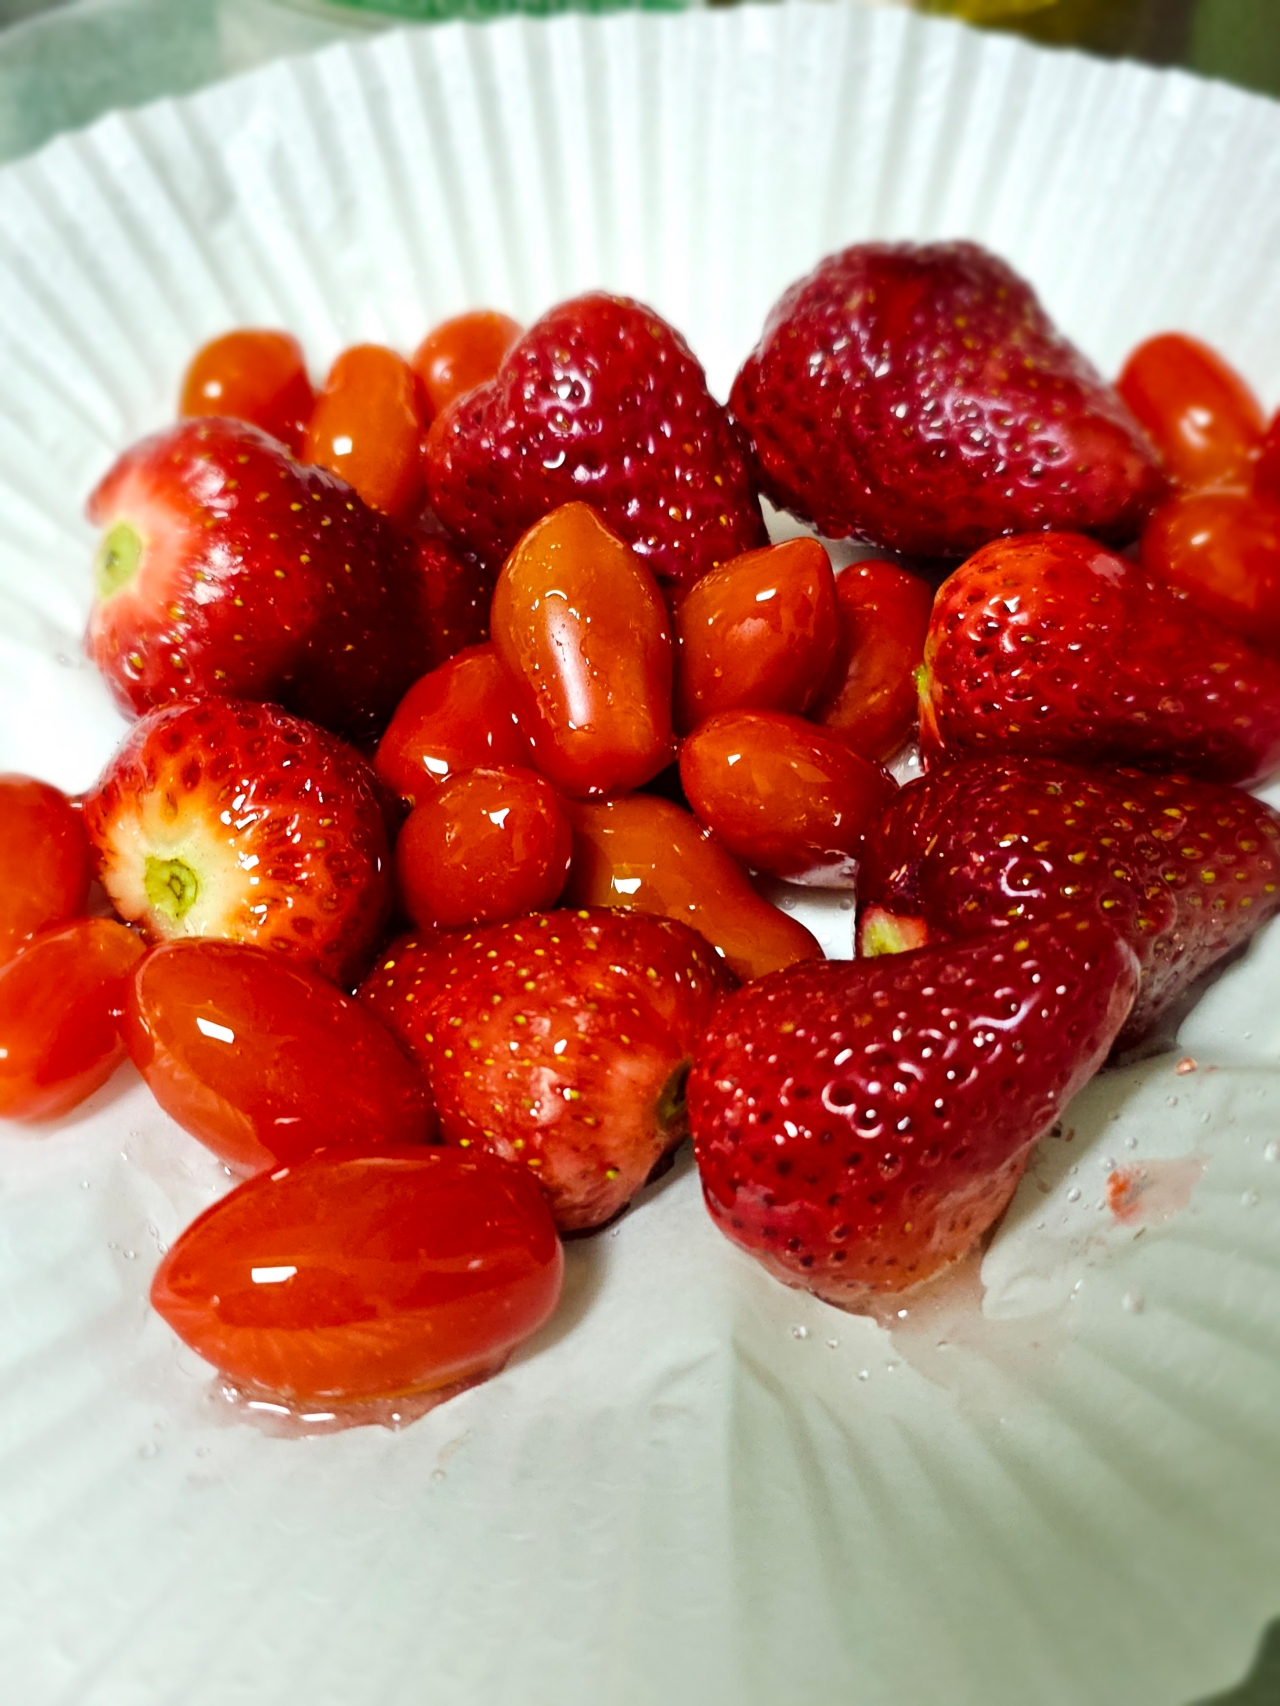 草莓冰糖葫芦🍓